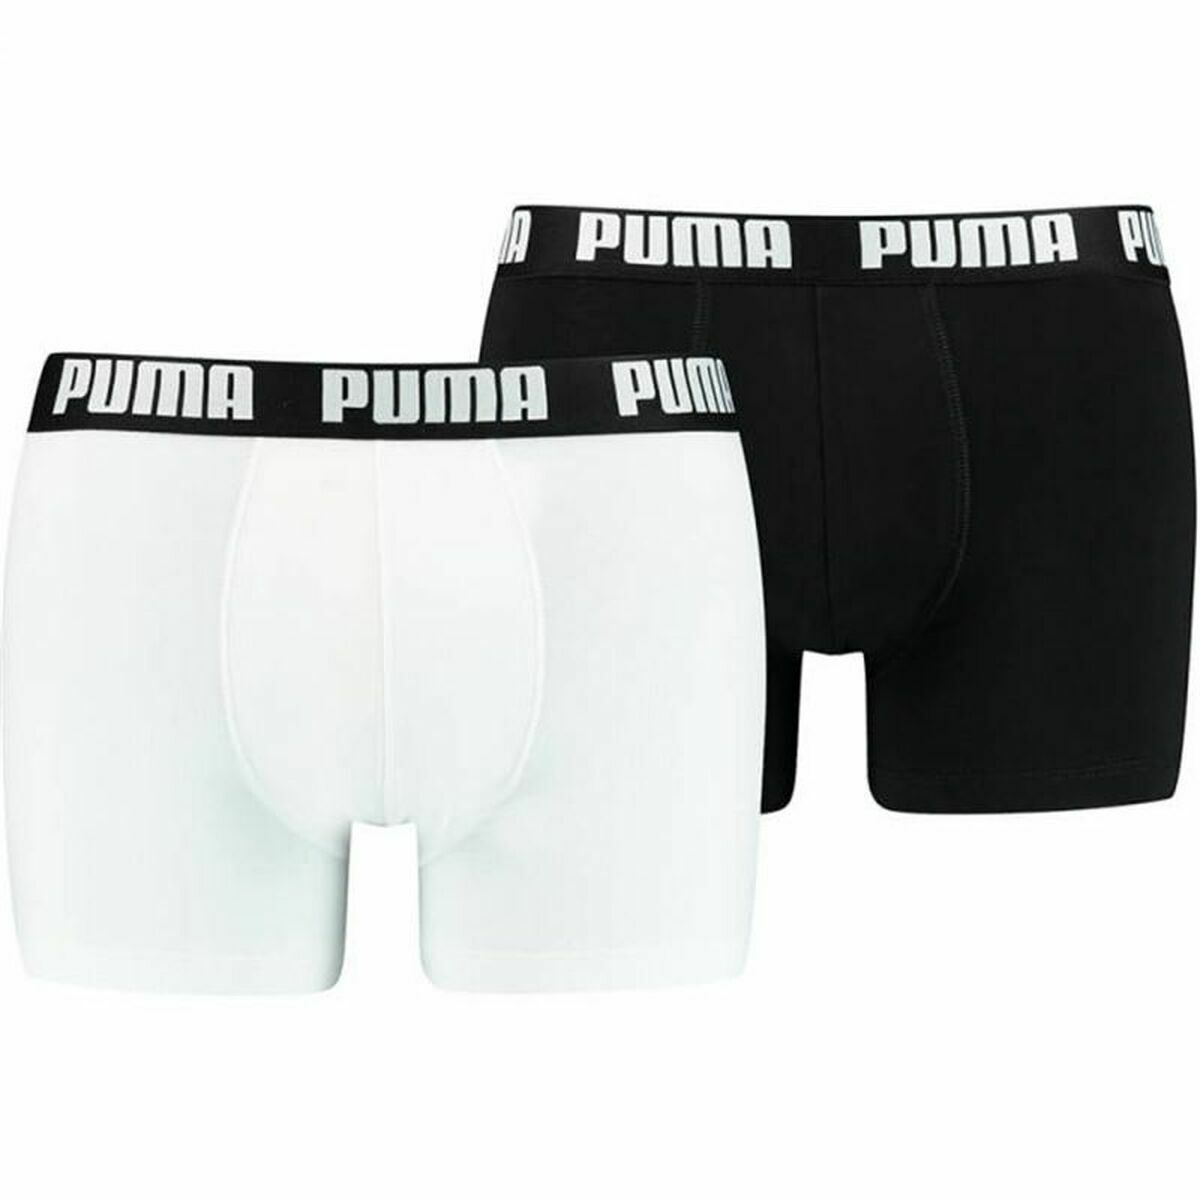 Miesten bokserit Puma Basic Musta Valkoinen, Koko L